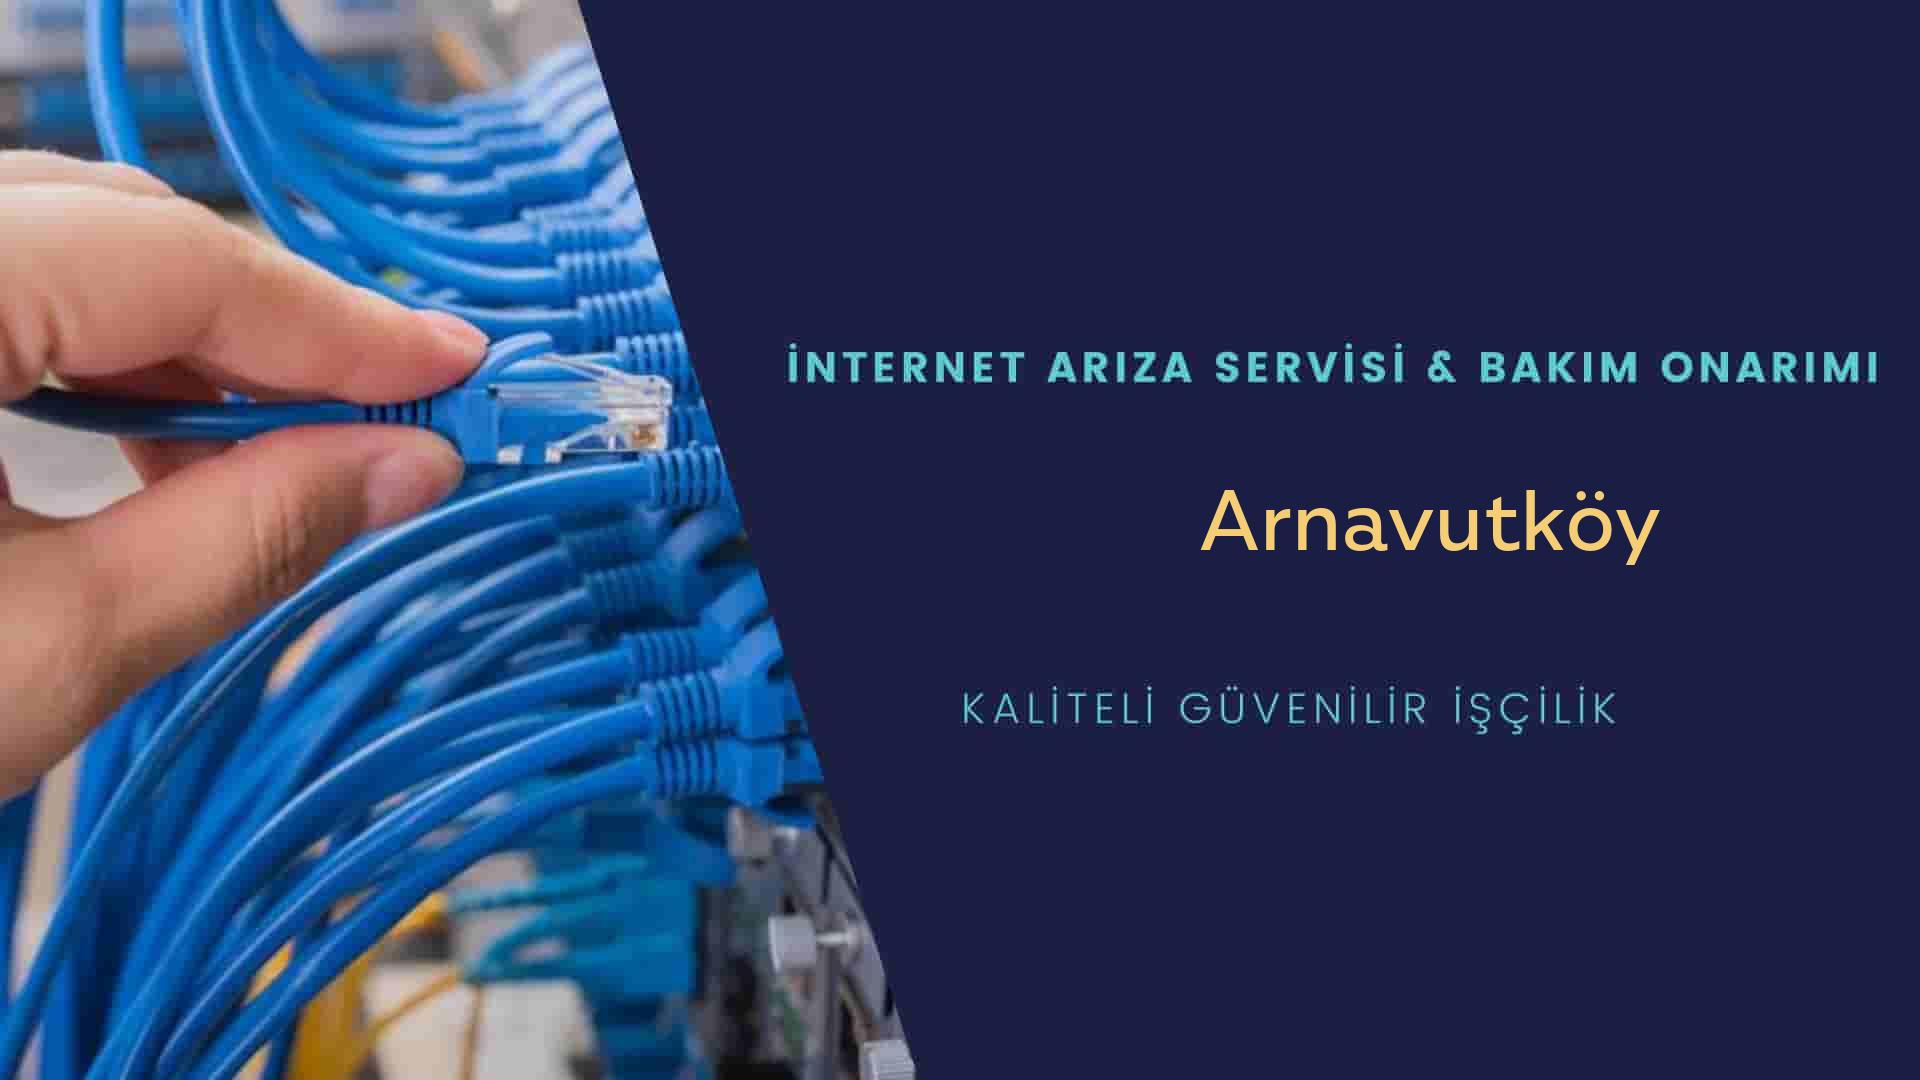 Arnavutköy internet kablosu çekimi yapan yerler veya elektrikçiler mi? arıyorsunuz doğru yerdesiniz o zaman sizlere 7/24 yardımcı olacak profesyonel ustalarımız bir telefon kadar yakındır size.